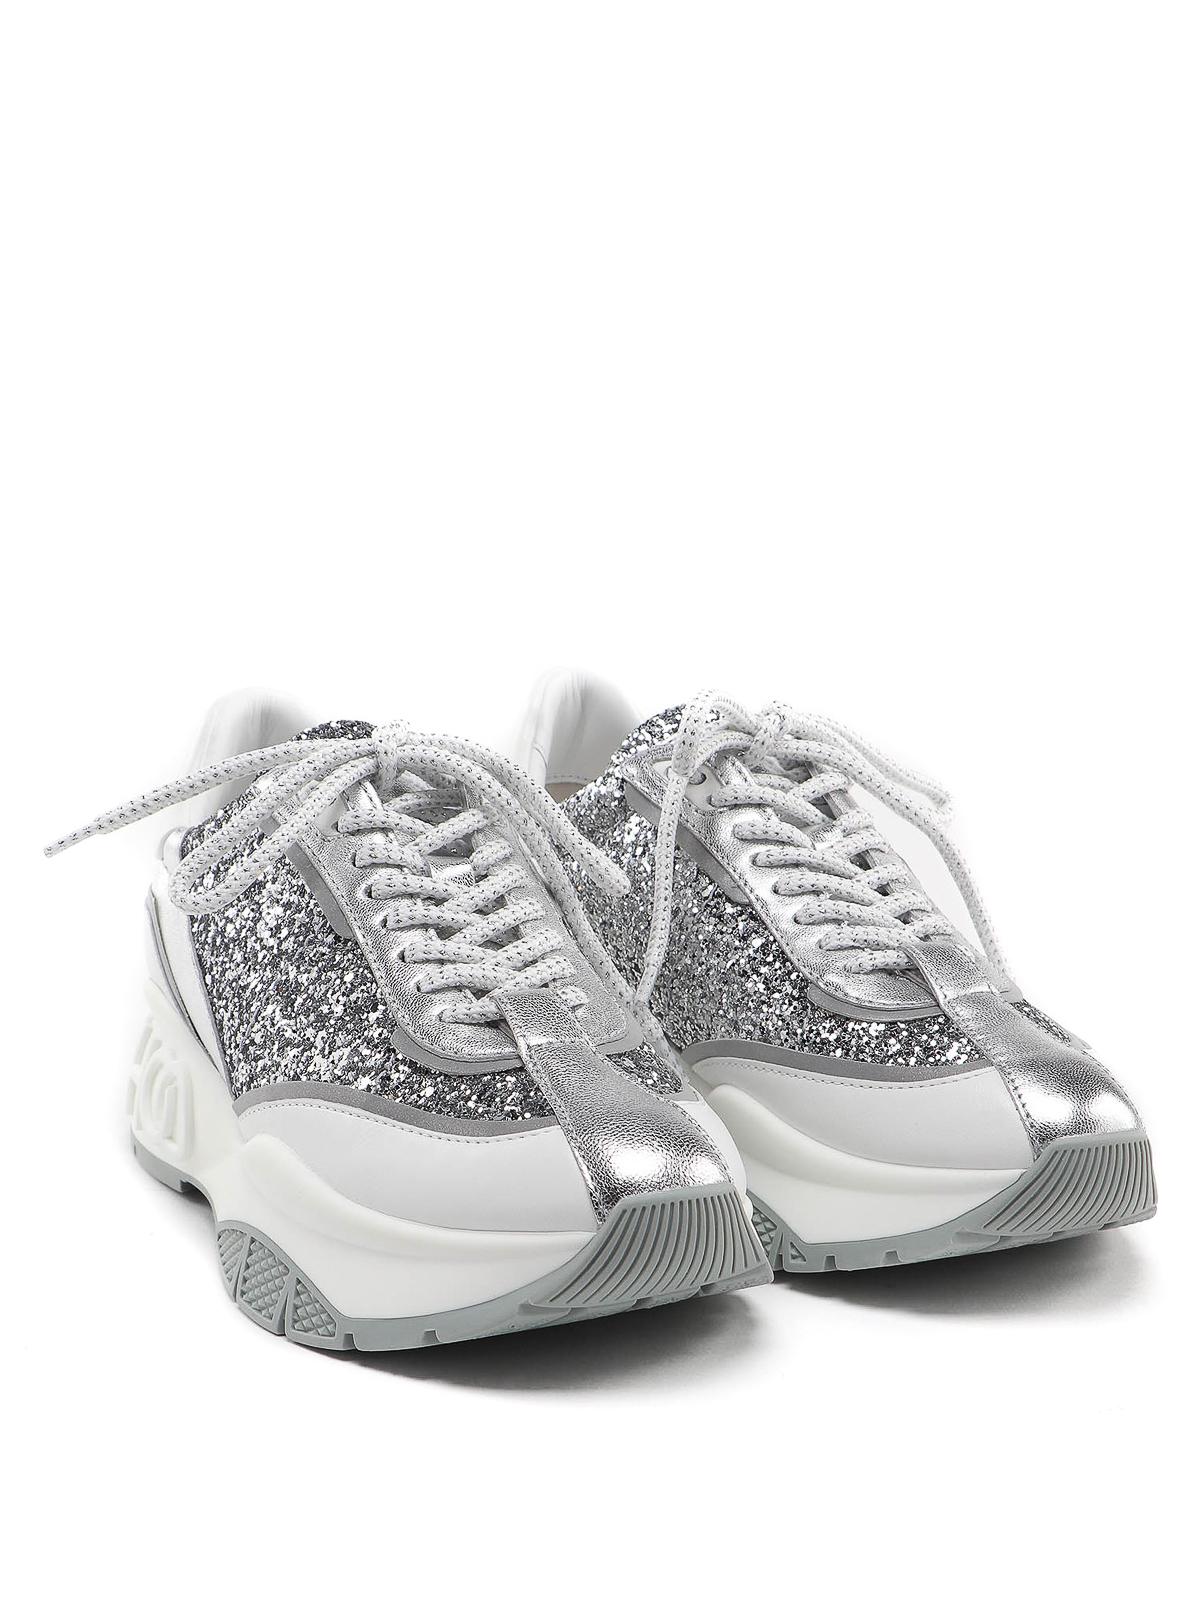 Jimmy Choo Leather Raine Sneakers in Silver (Metallic) - Lyst